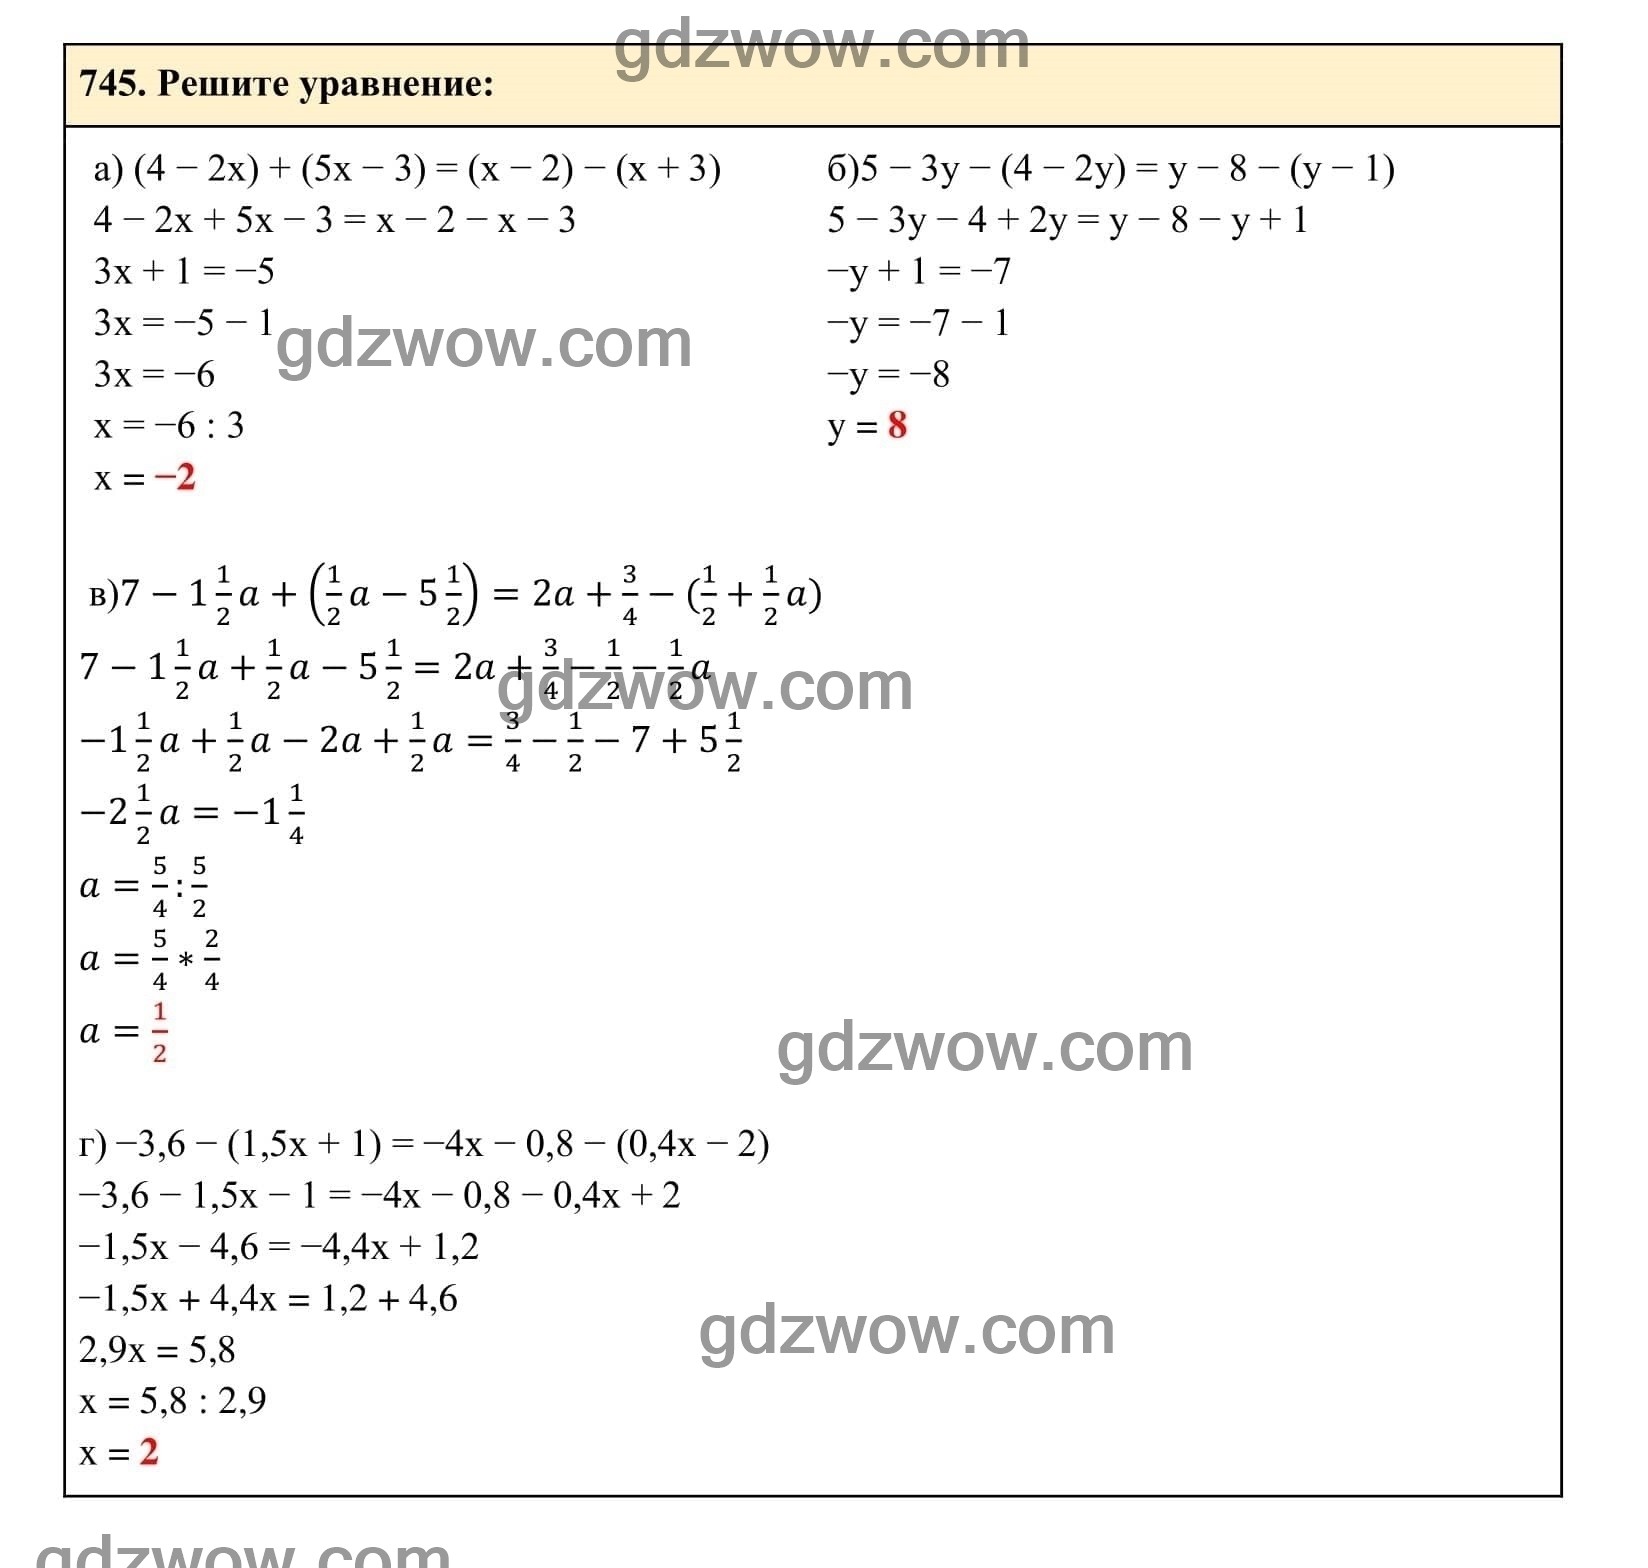 Упражнение 745 - ГДЗ по Алгебре 7 класс Учебник Макарычев (решебник) - GDZwow